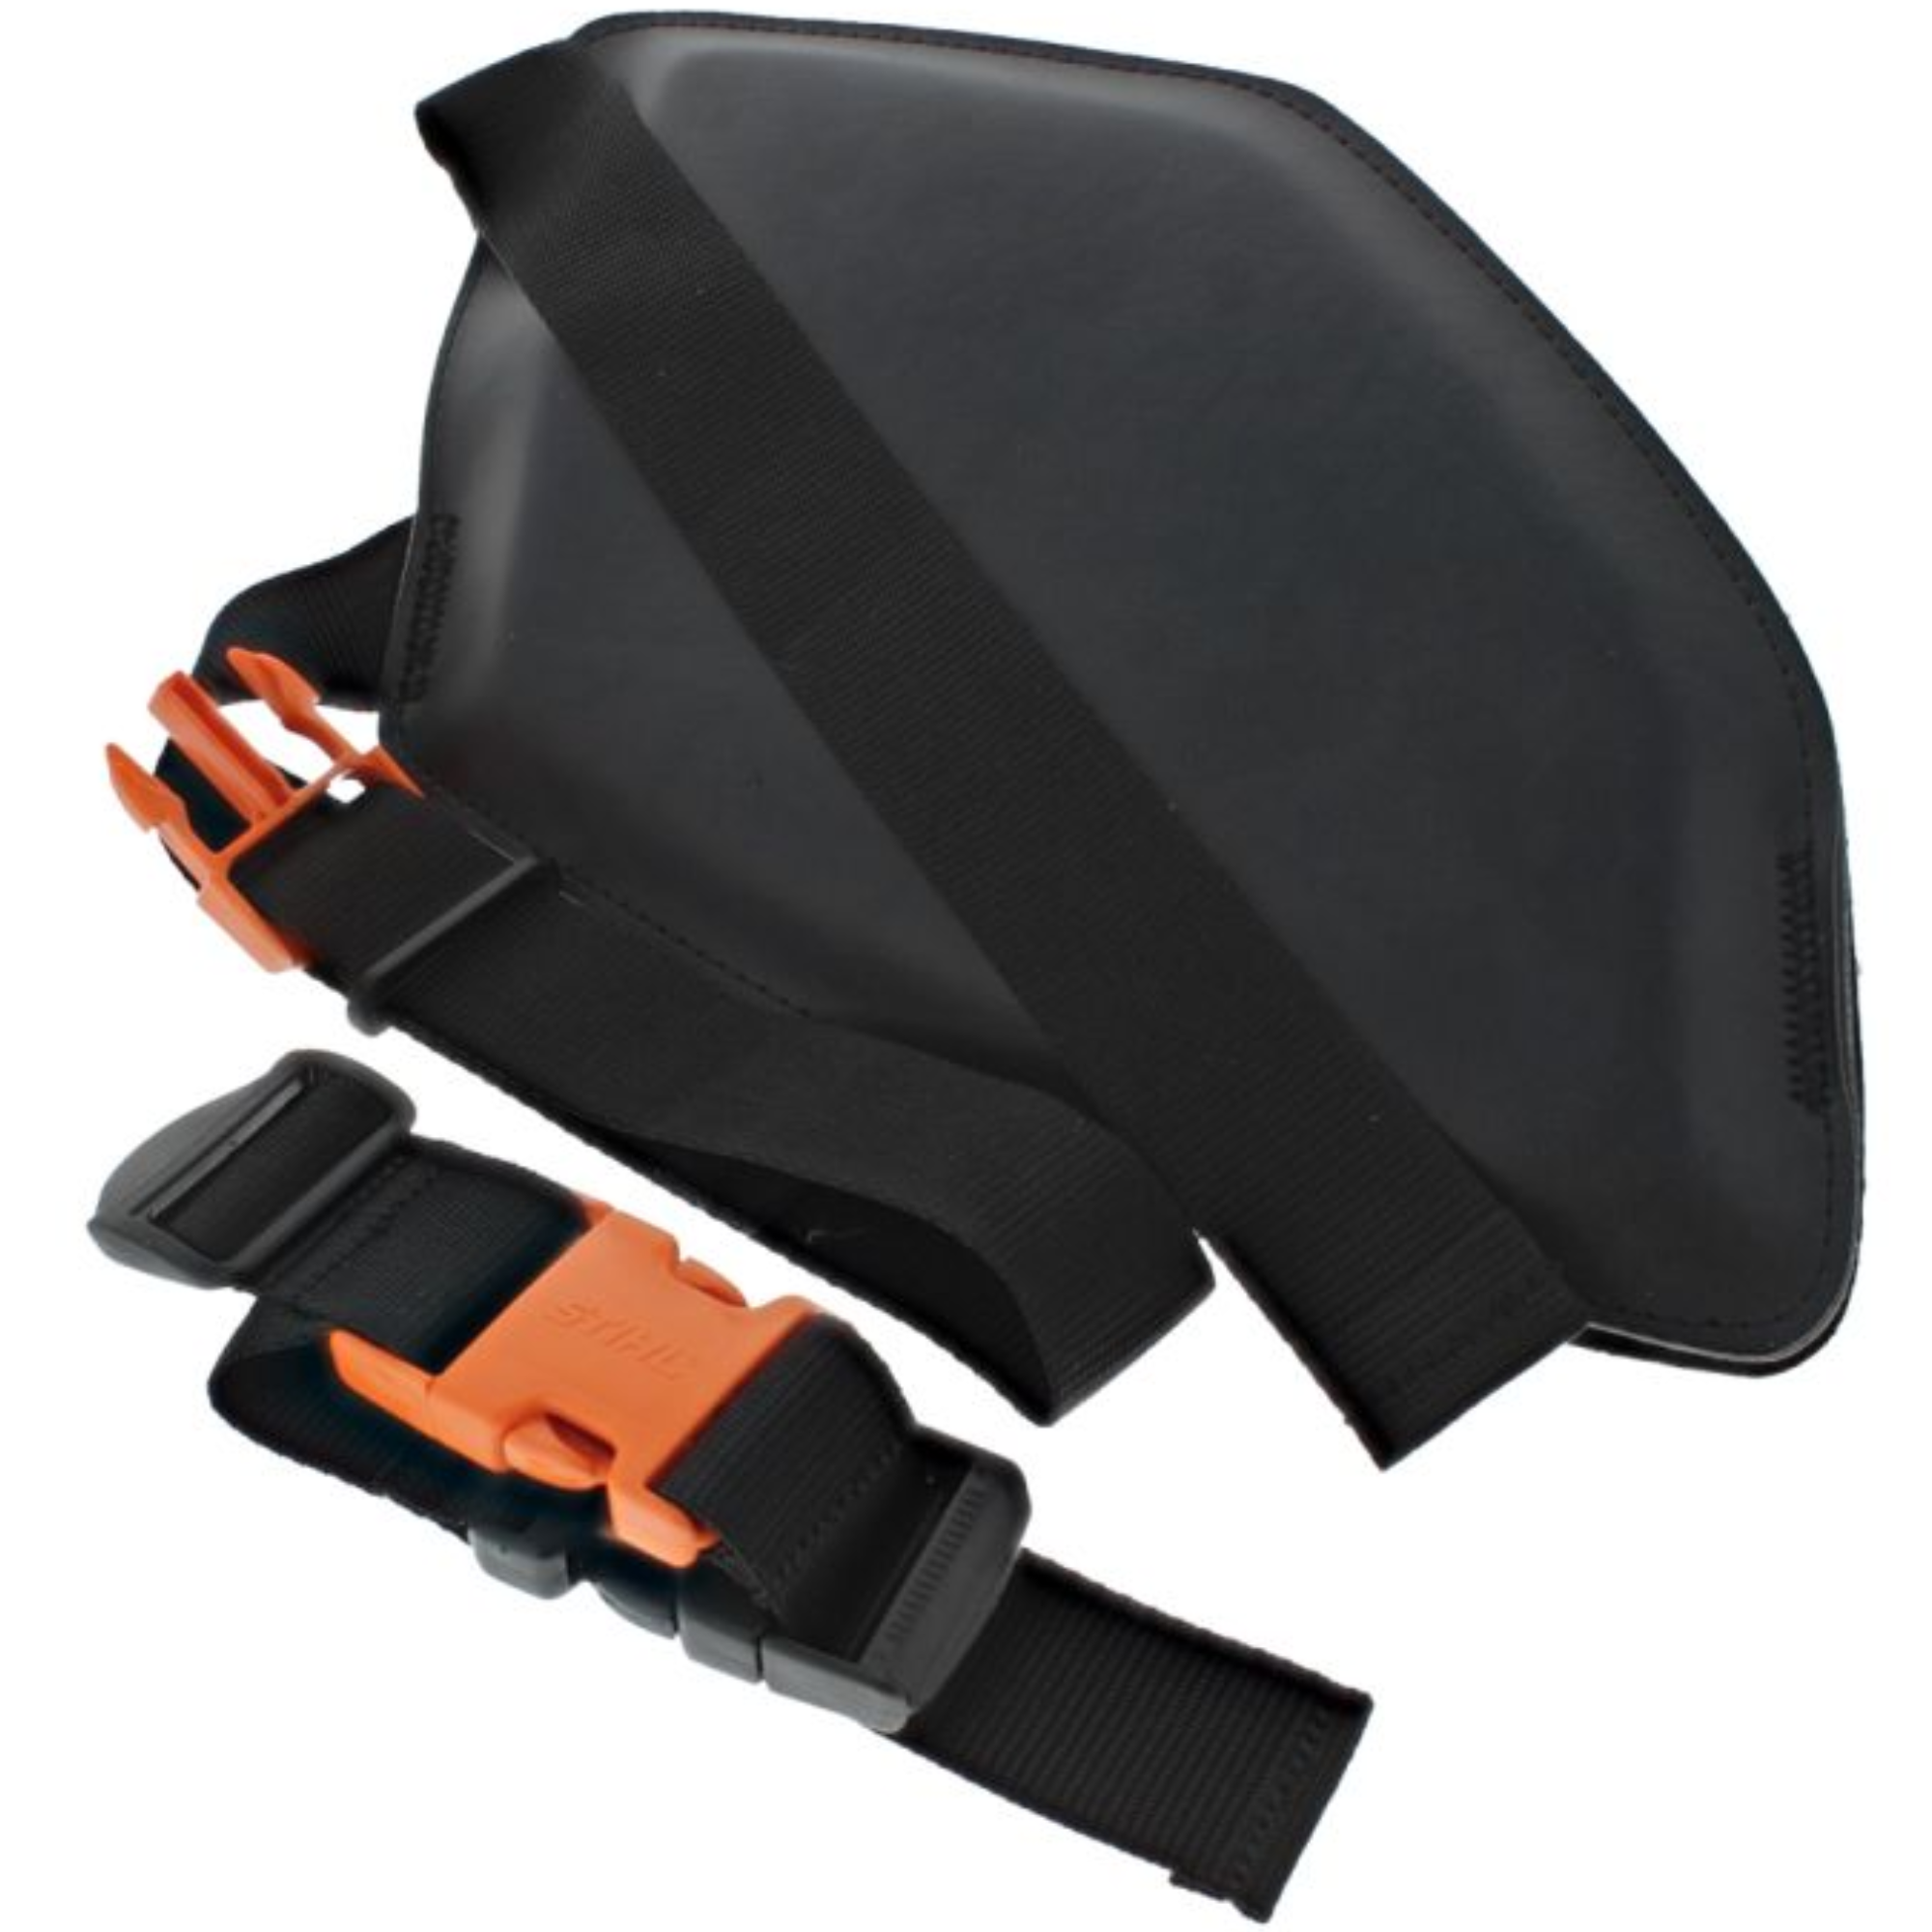 Stihl Harness Kit for KMA 130 R/ FSA 130 R | 0000 007 1045